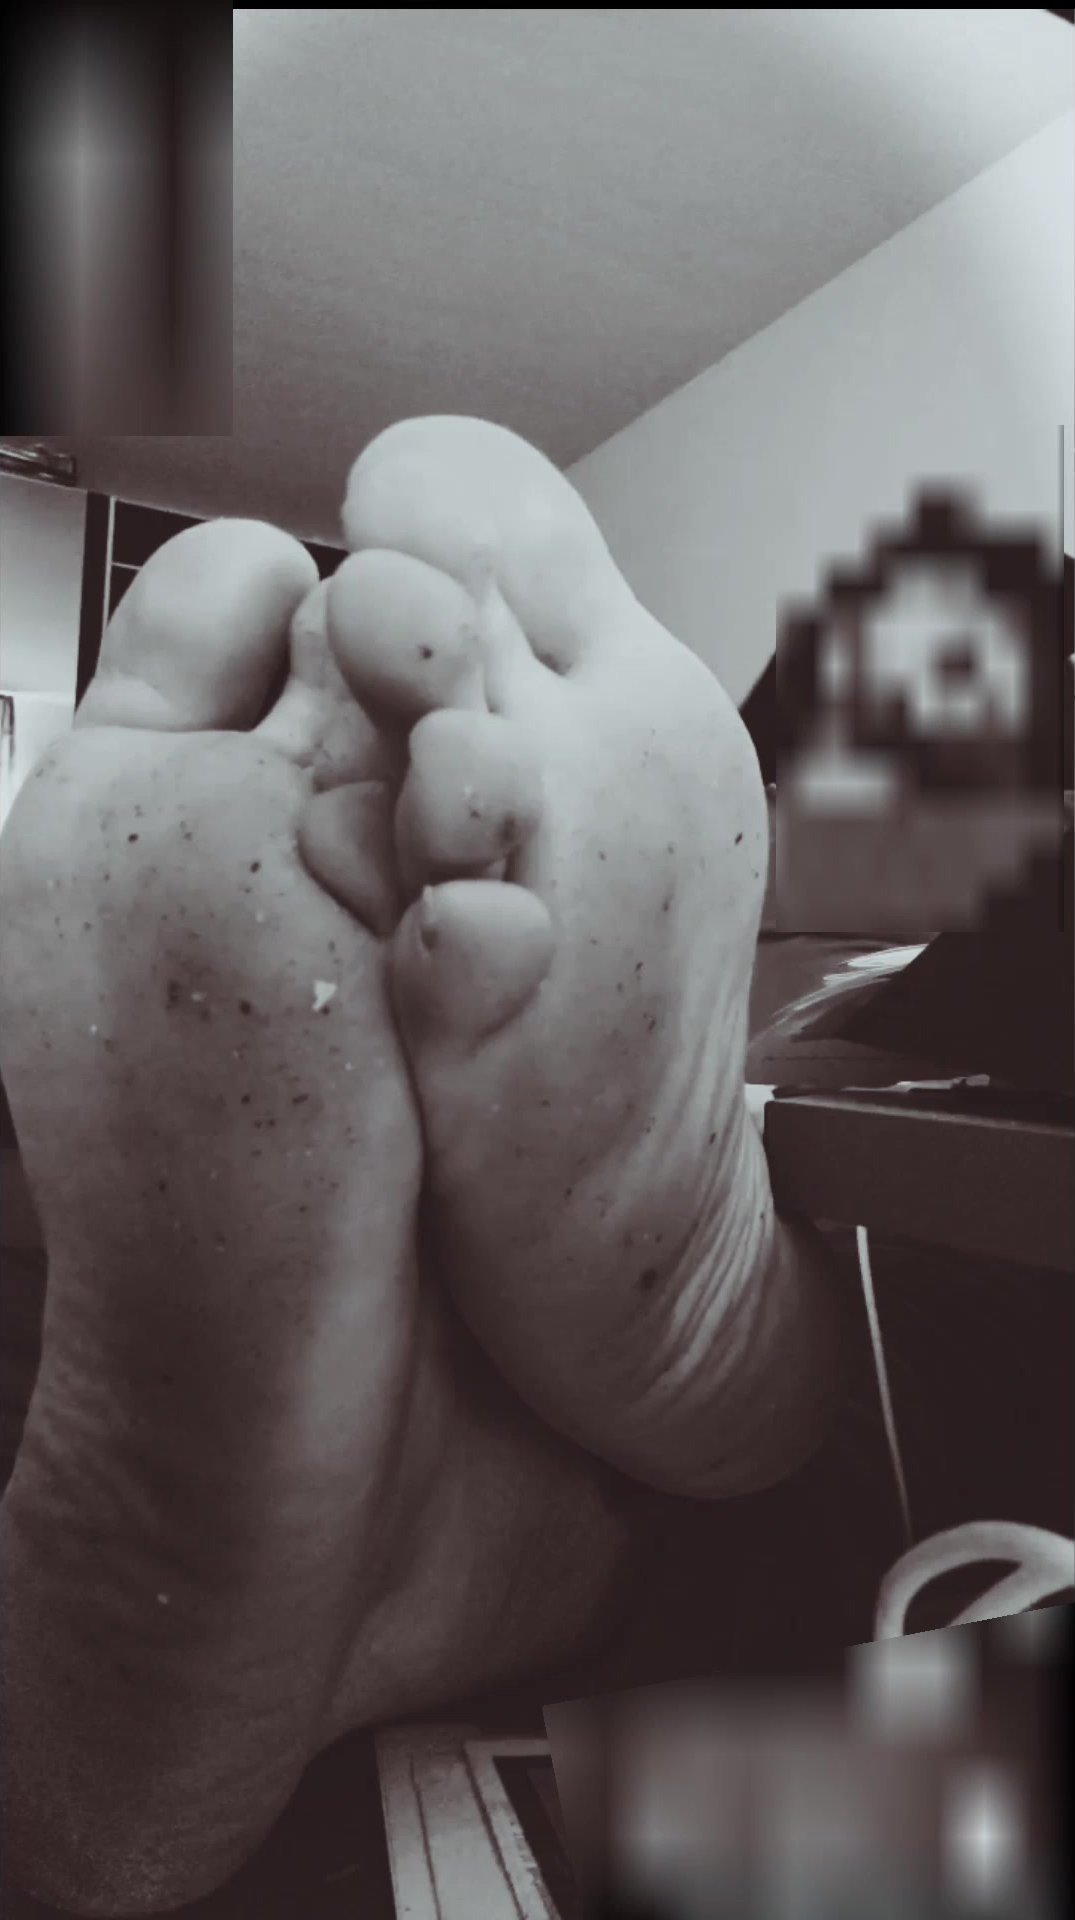 My dirty feet again